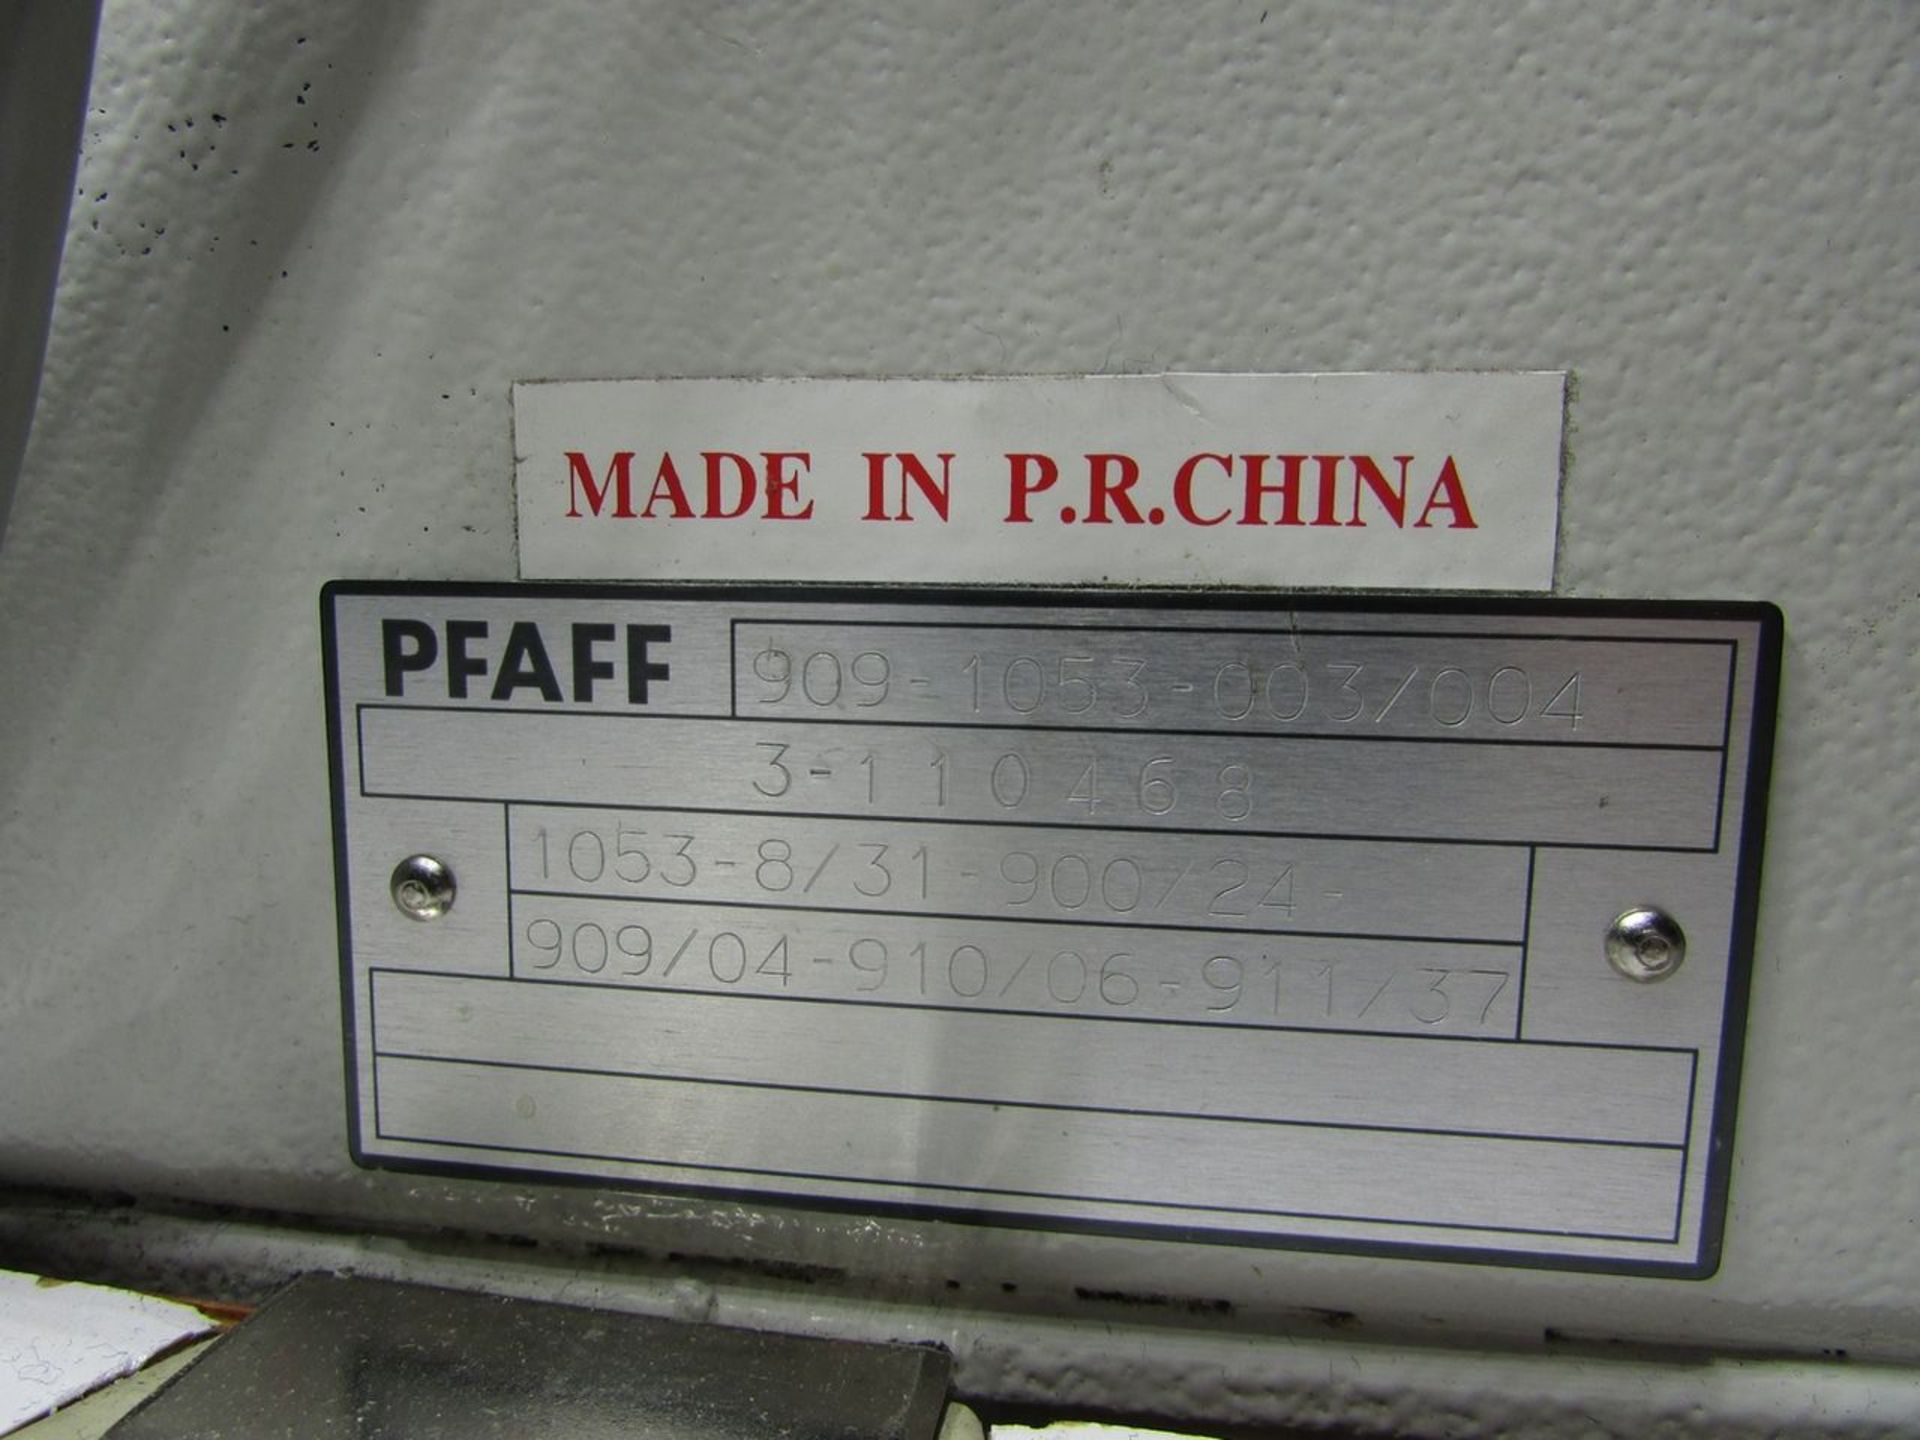 Pfaff Model 1053-8/31-900/24 Single Needle Lockstitch Sewing Machine, Back Tack, Pfaff Stitch - Image 9 of 9